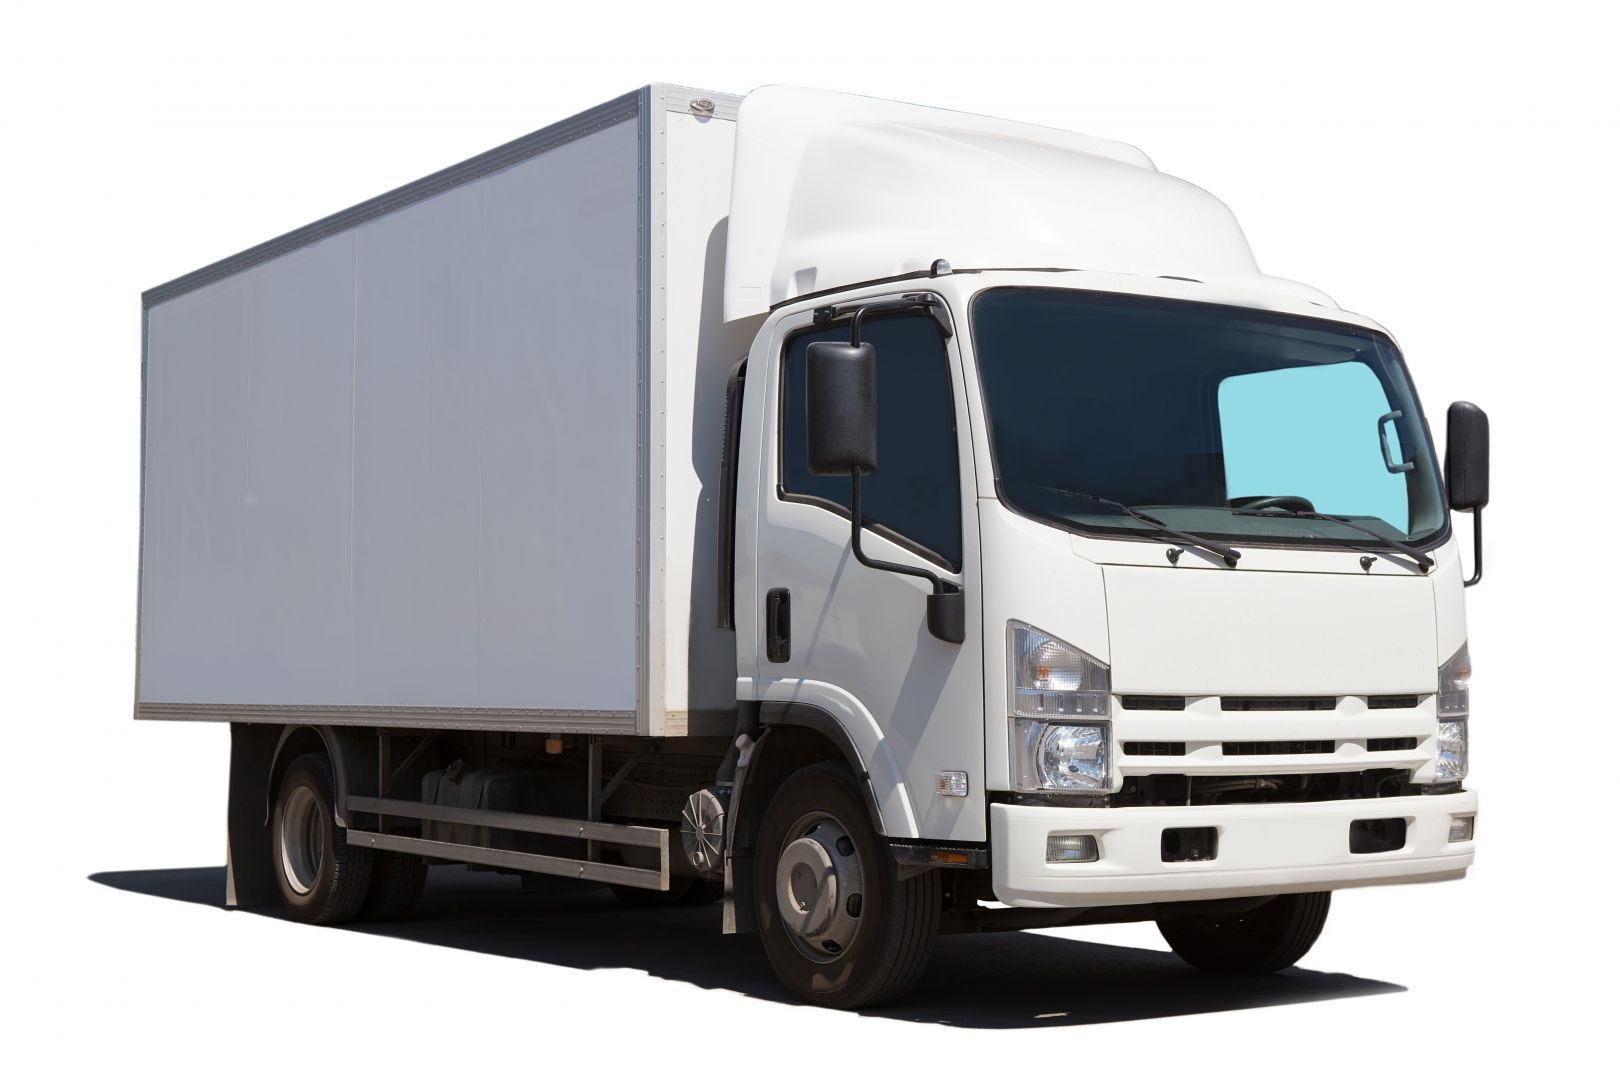 Poptávka na stará plachta na kamion nebo nákladní vůz (Plachty) - Praha